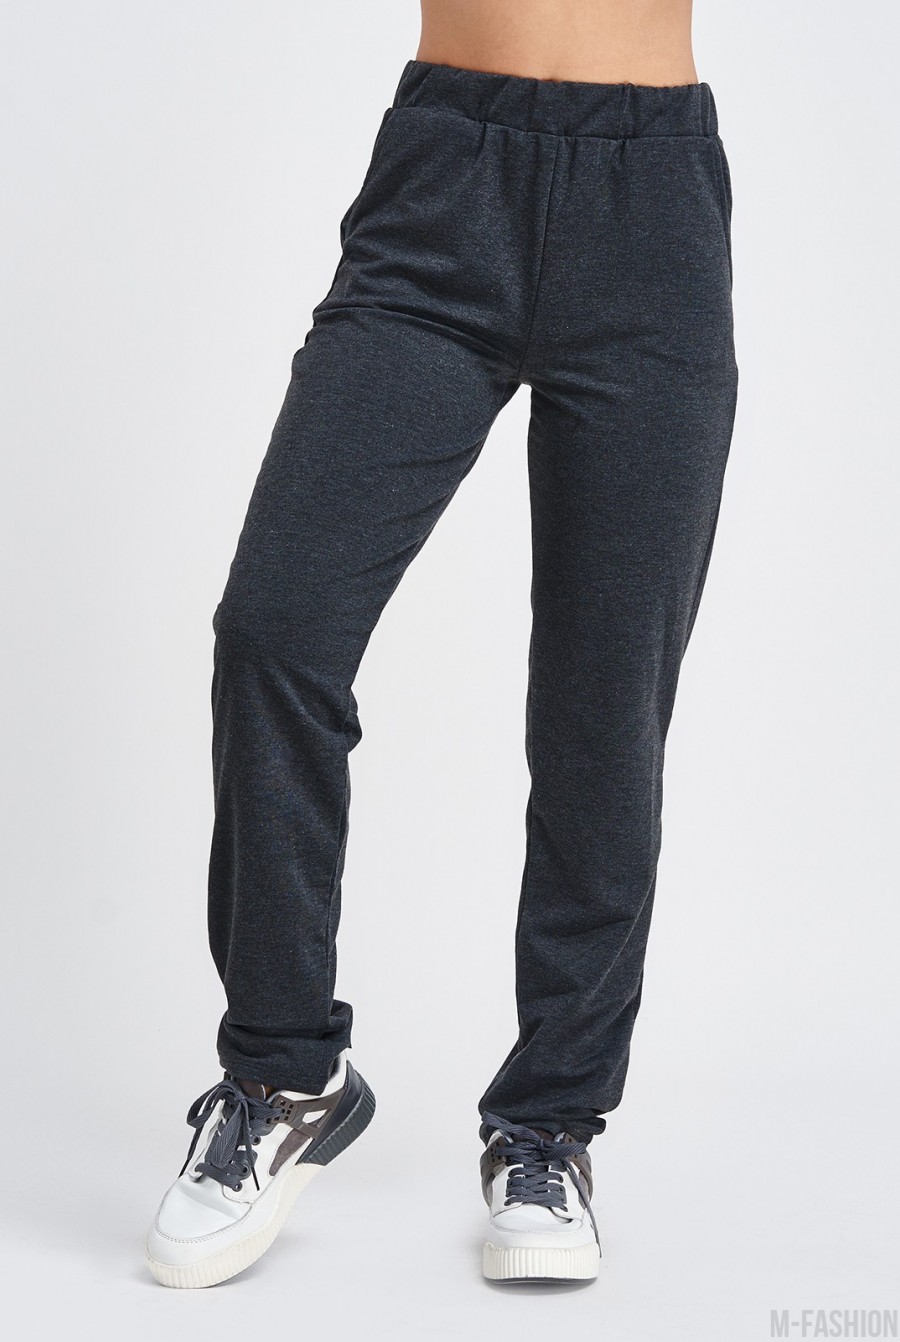 Темно-серые трикотажные штаны с карманами - Фото 1